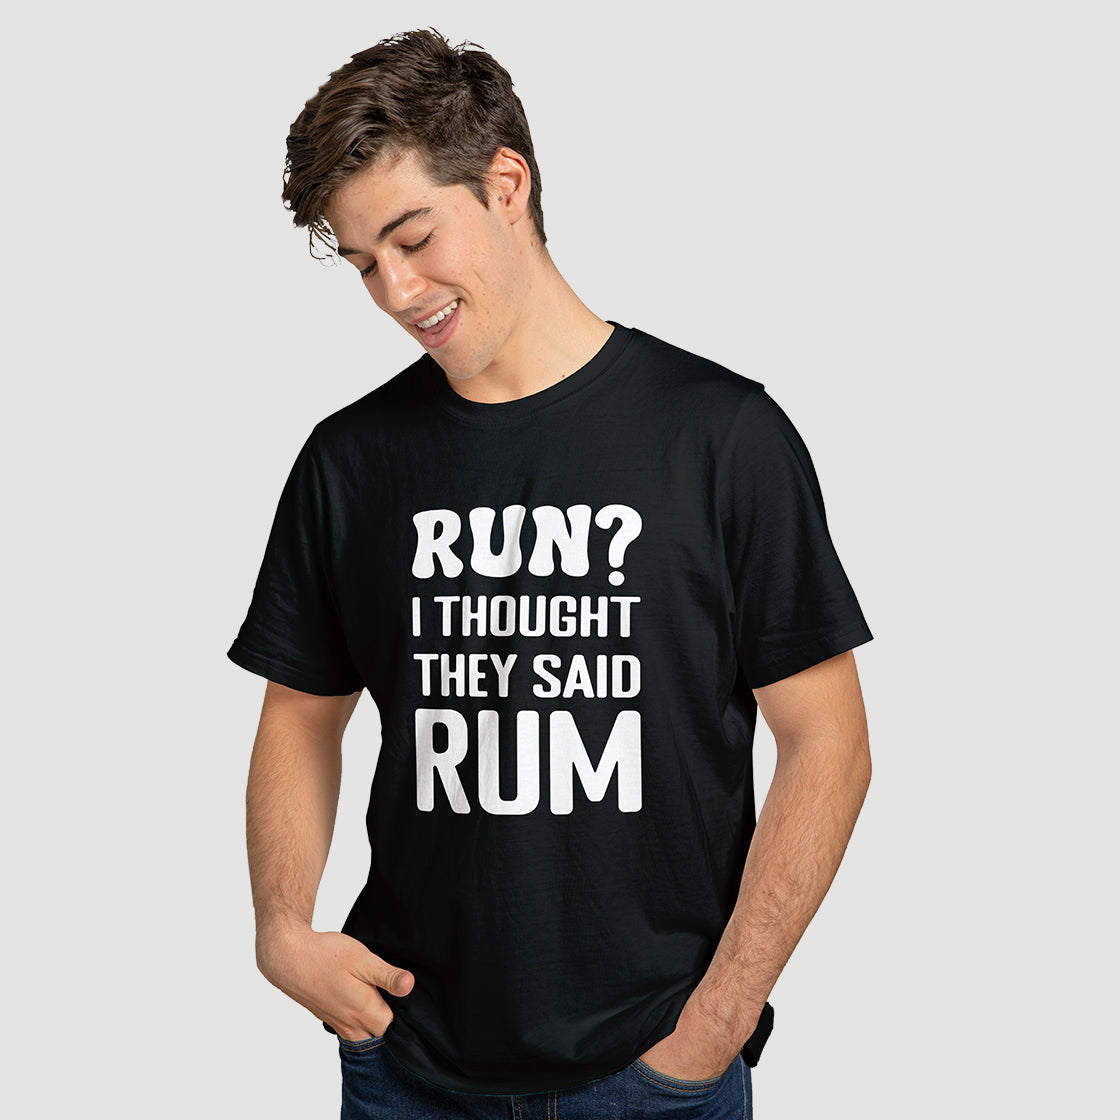 "Run?" T-Shirt